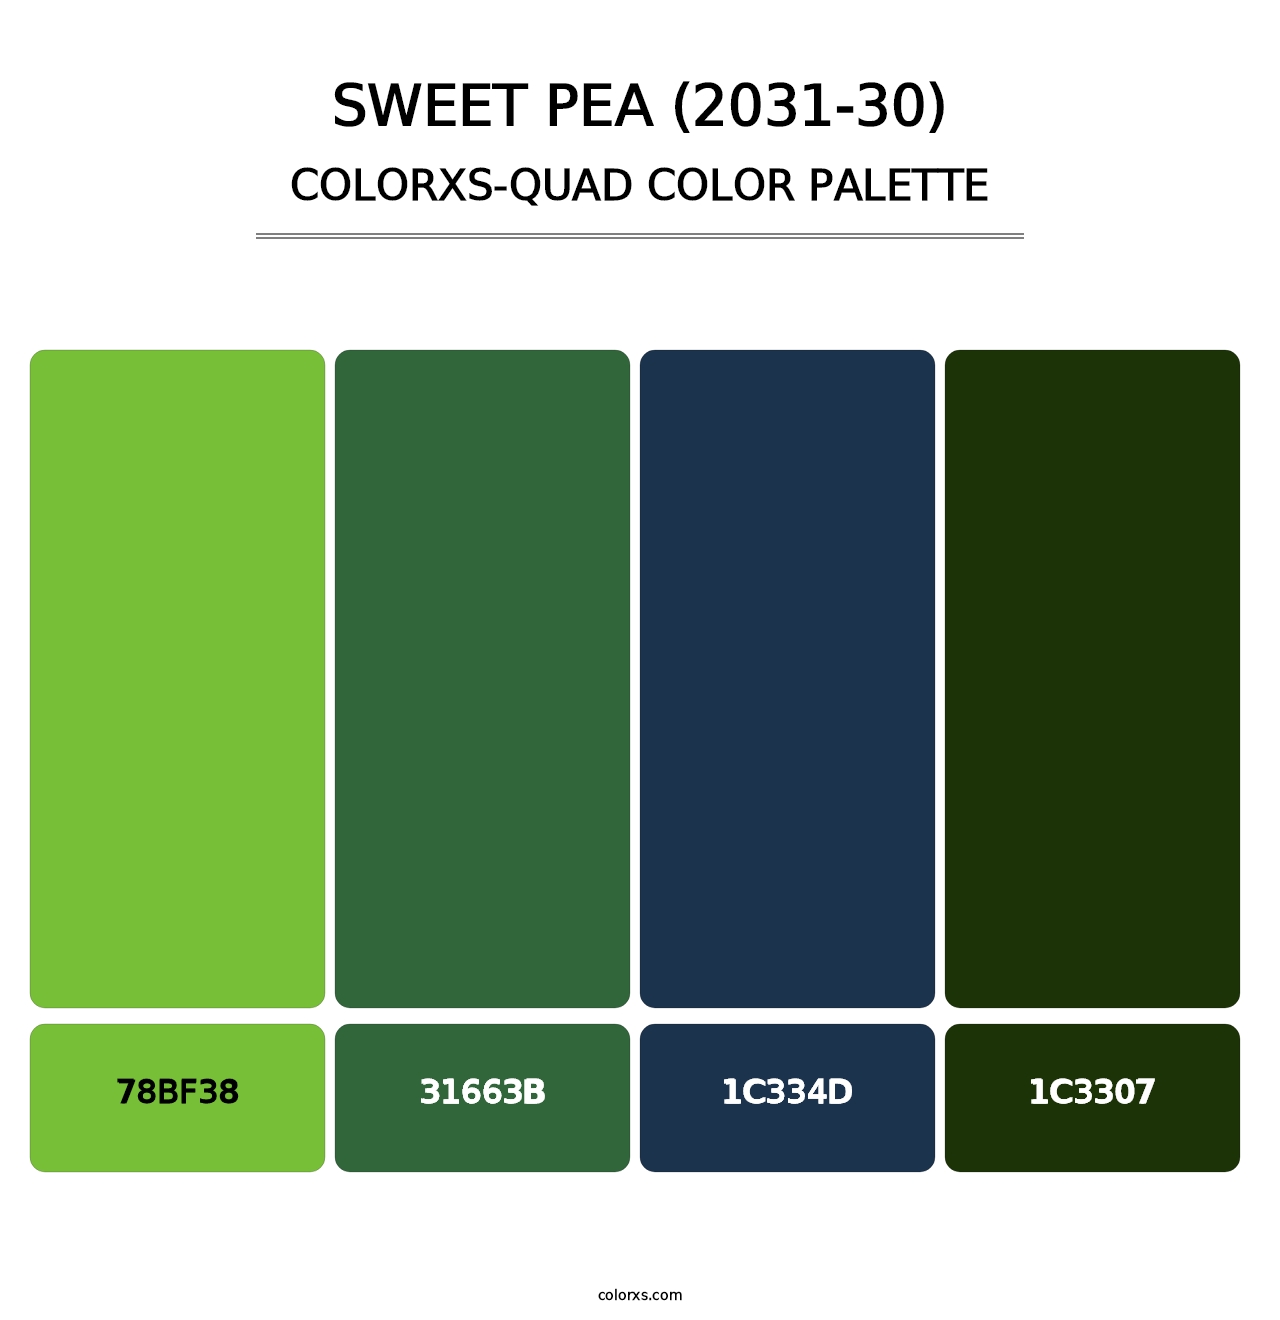 Sweet Pea (2031-30) - Colorxs Quad Palette